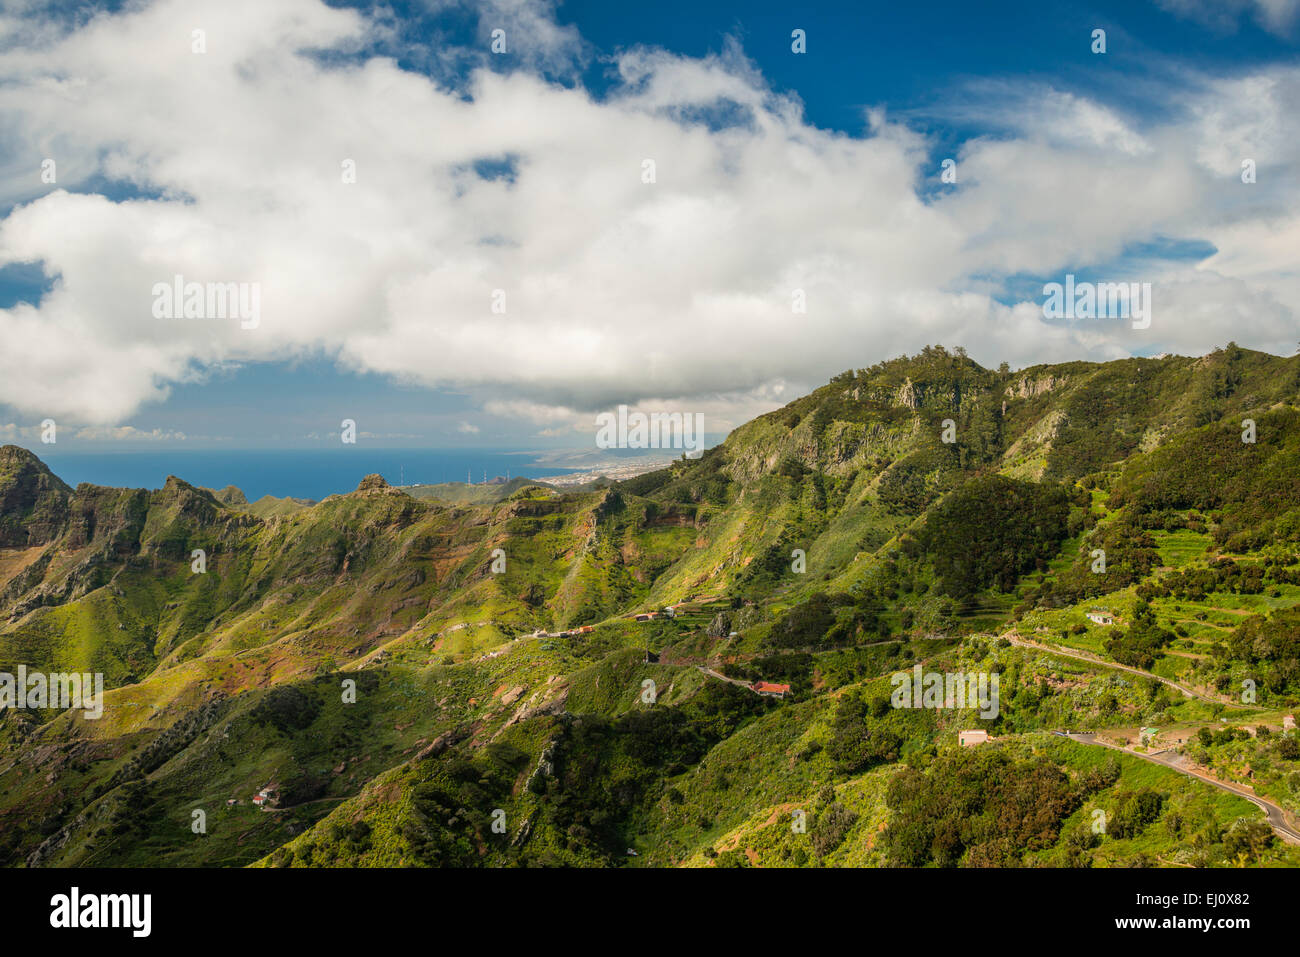 Anaga, view, outside, view, mountains, mountainous, mountain landscape, mountain wood, Europe, European, rocks, cliffs, mountains Stock Photo